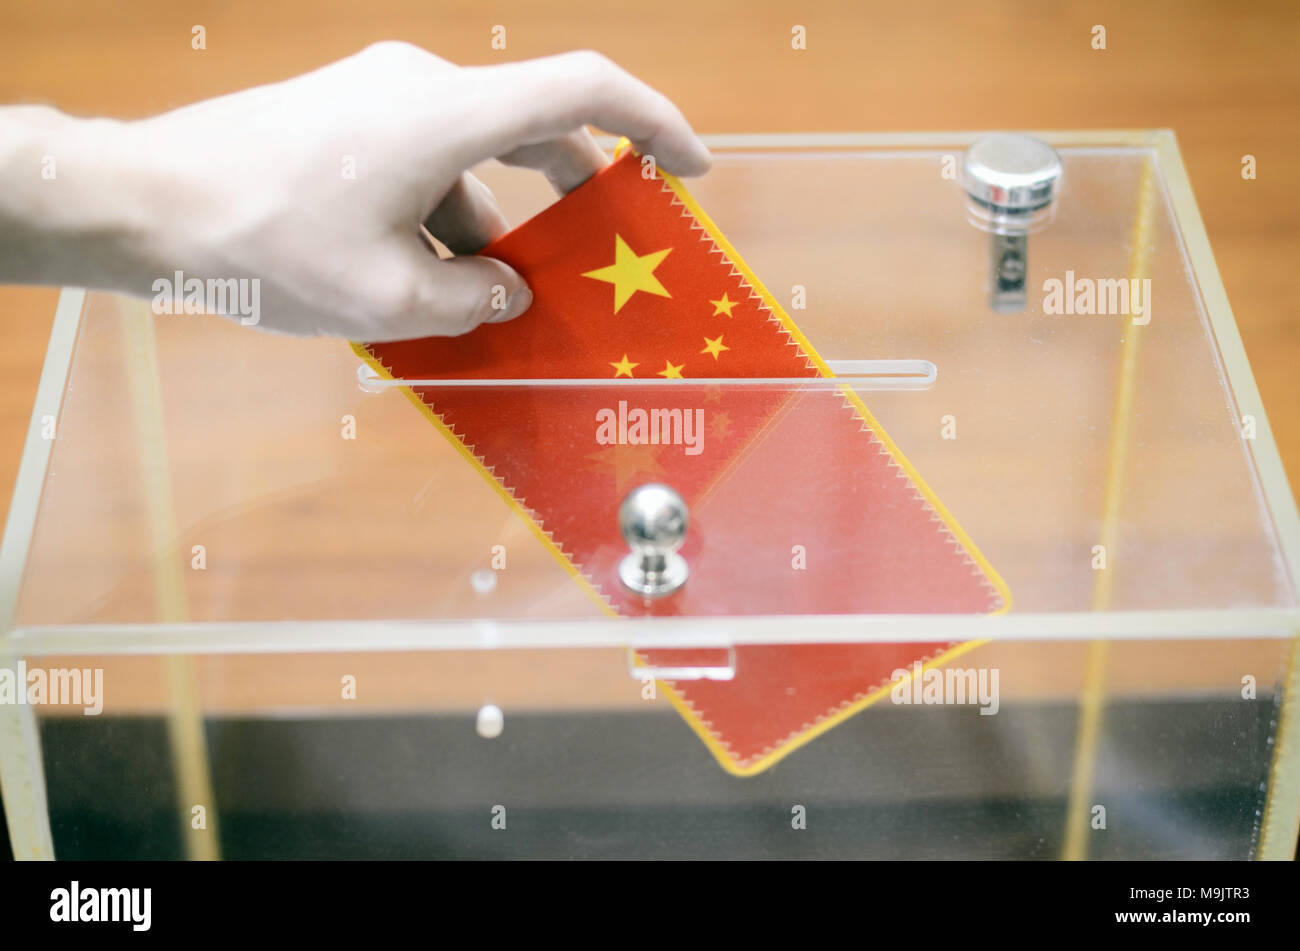 Hombre de insertar la bandera de China en la urna de votación, las votaciones y elecciones en China. Foto de stock